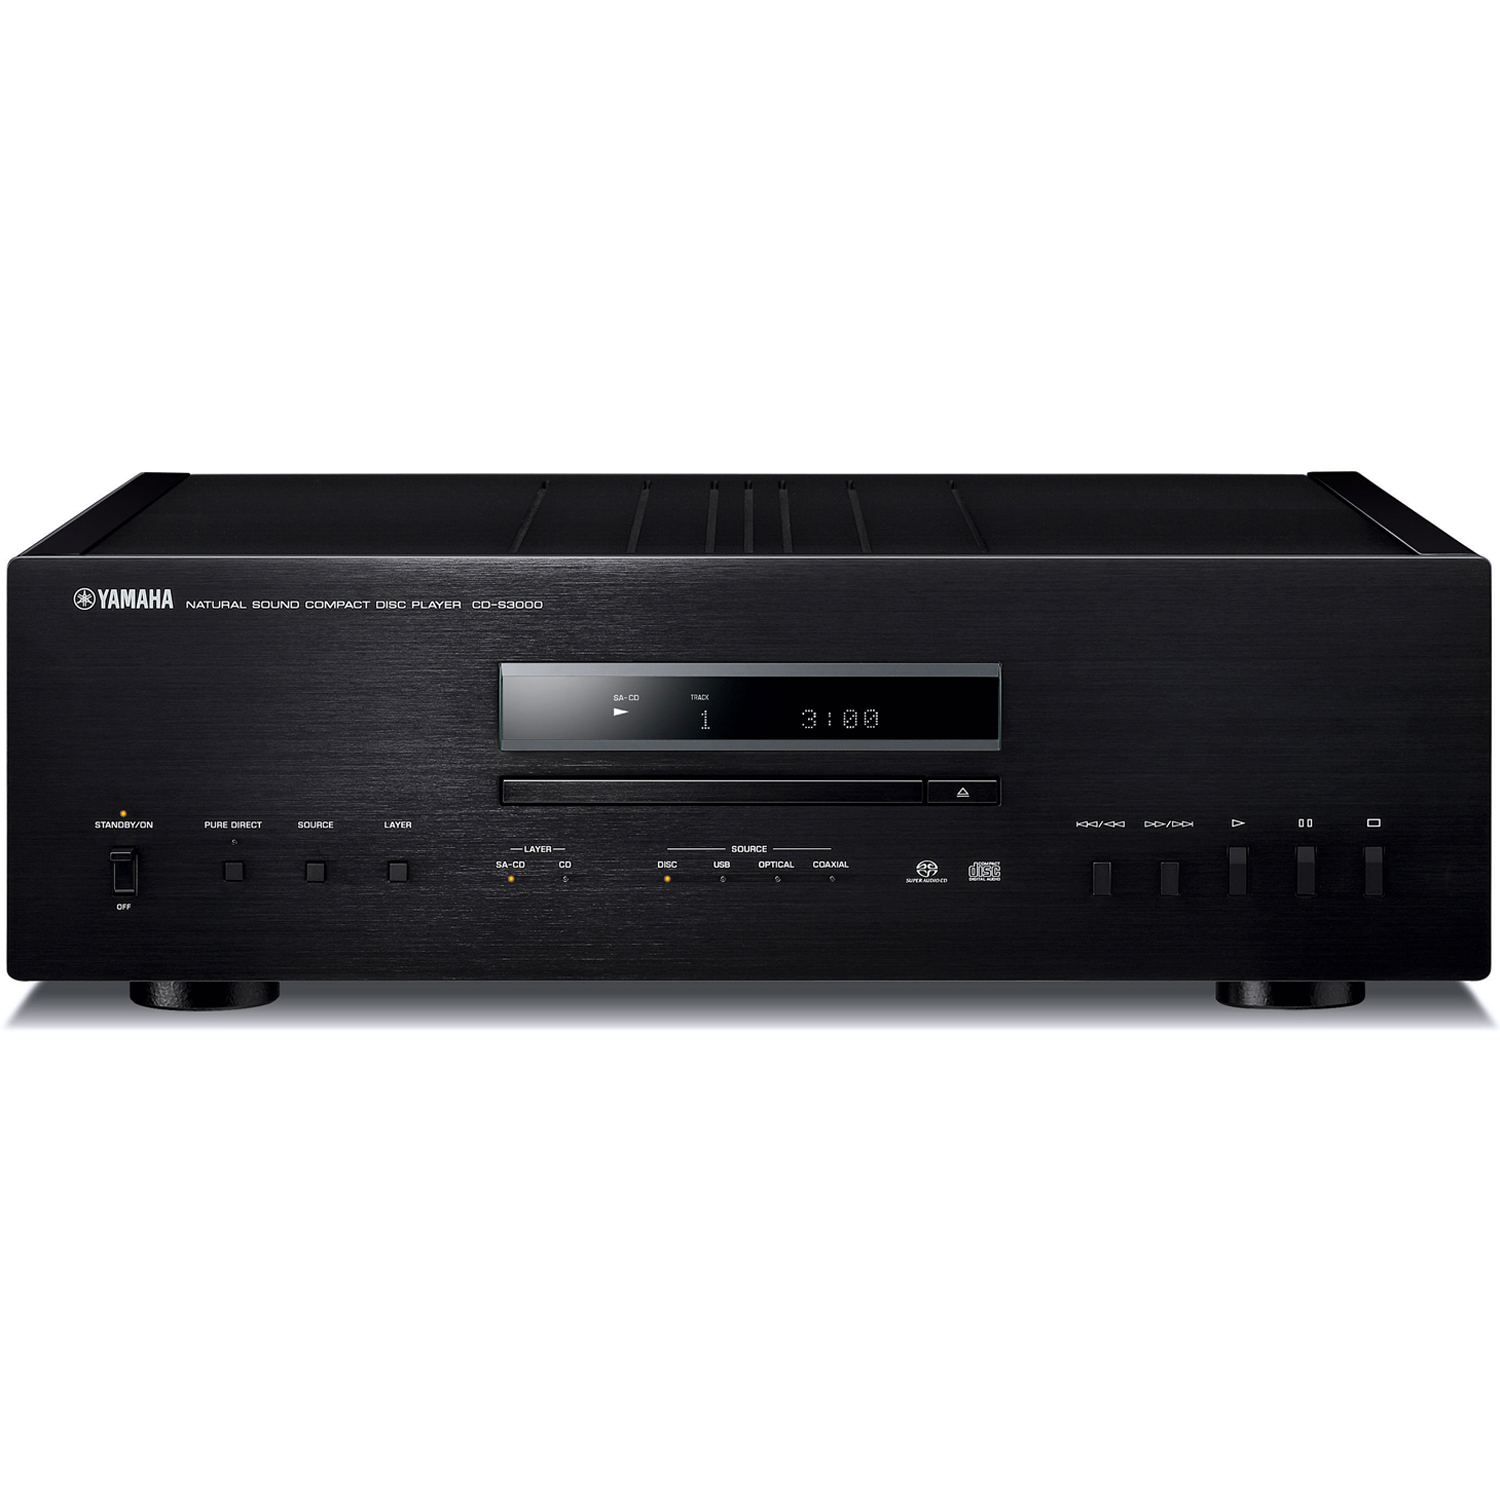 YAMAHA CD-S3000 Stereo SACD/CD Player/DAC Black